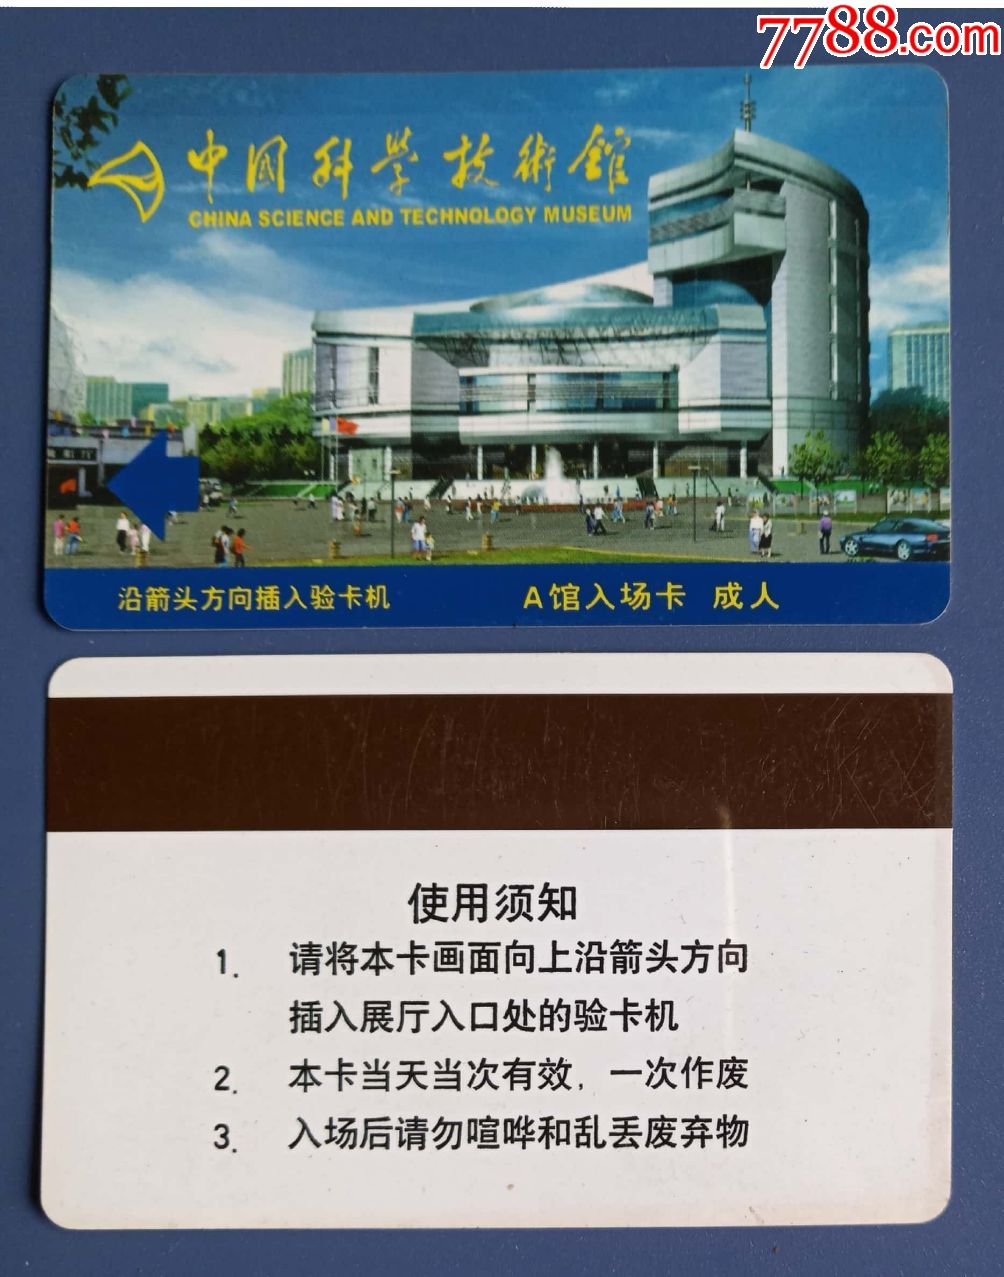 品种: 旅游景点门票-旅游景点门票 属性: 博物馆/展馆,入口票,北京